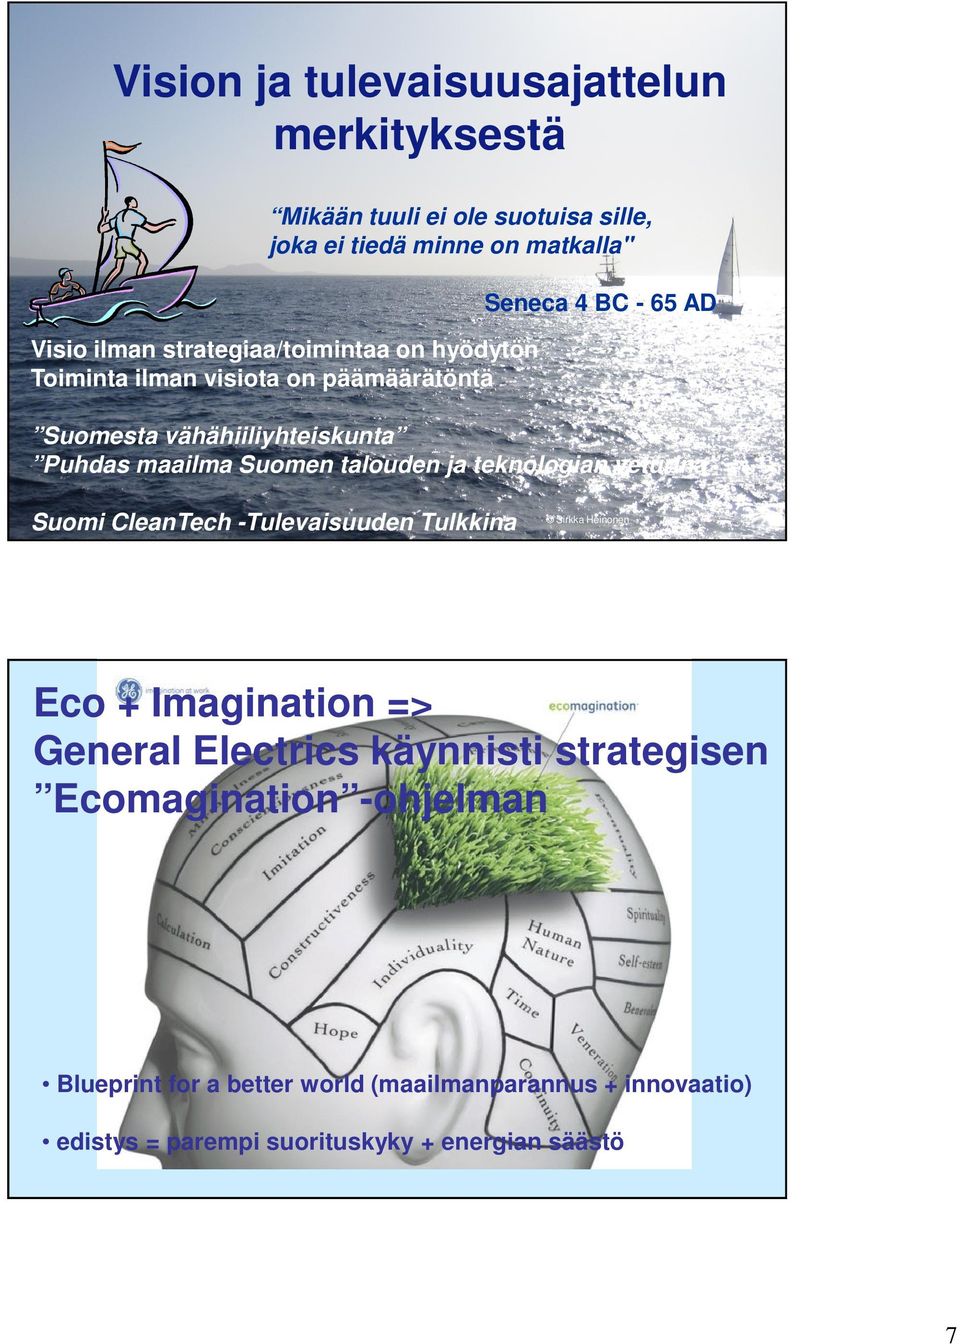 talouden ja teknologian veturina Suomi CleanTech -Tulevaisuuden Tulkkina Sirkka Heinonen Eco + Imagination => General Electrics käynnisti